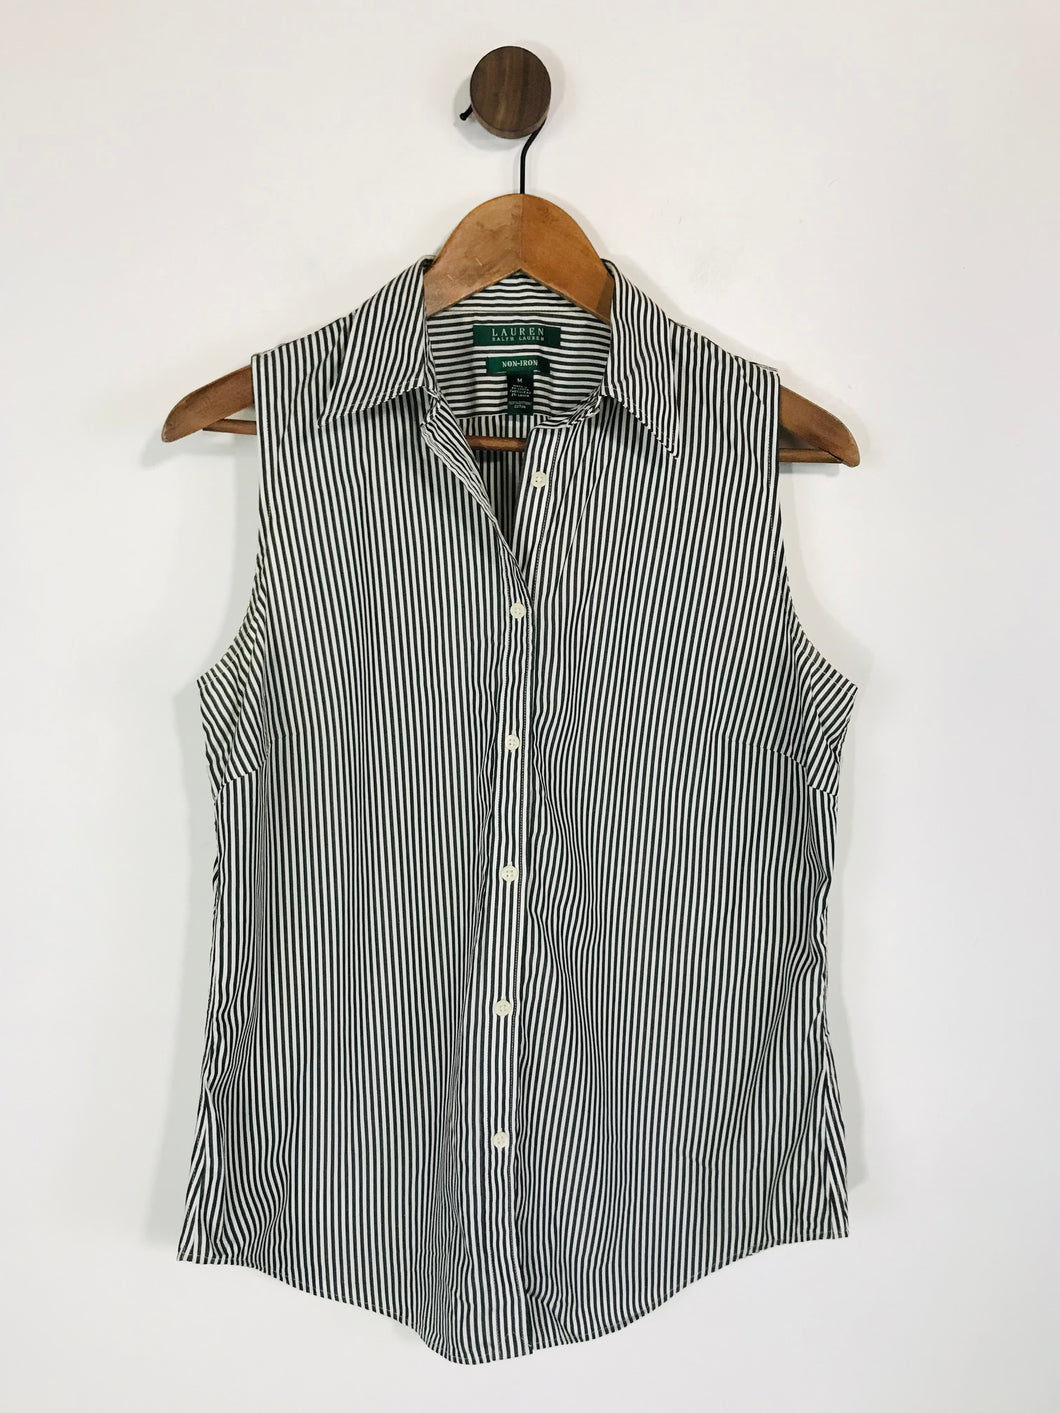 Ralph Lauren Women's Striped Sleeveless Button-Up Shirt | M UK10-12 | Blue